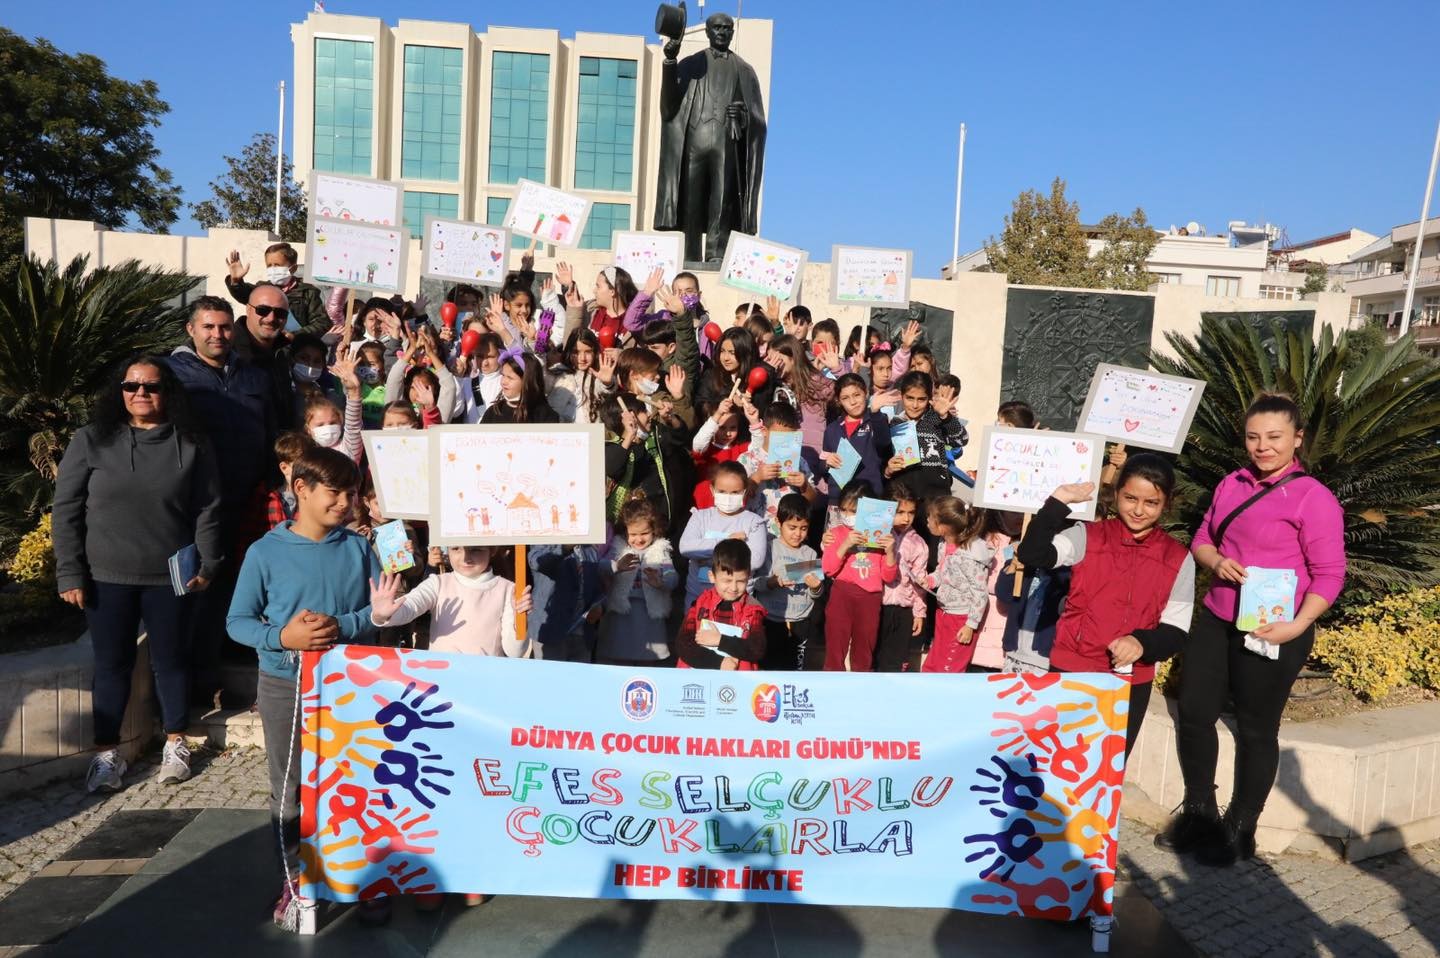 Selçuklu çocuklar, hakları için yürüdü #izmir